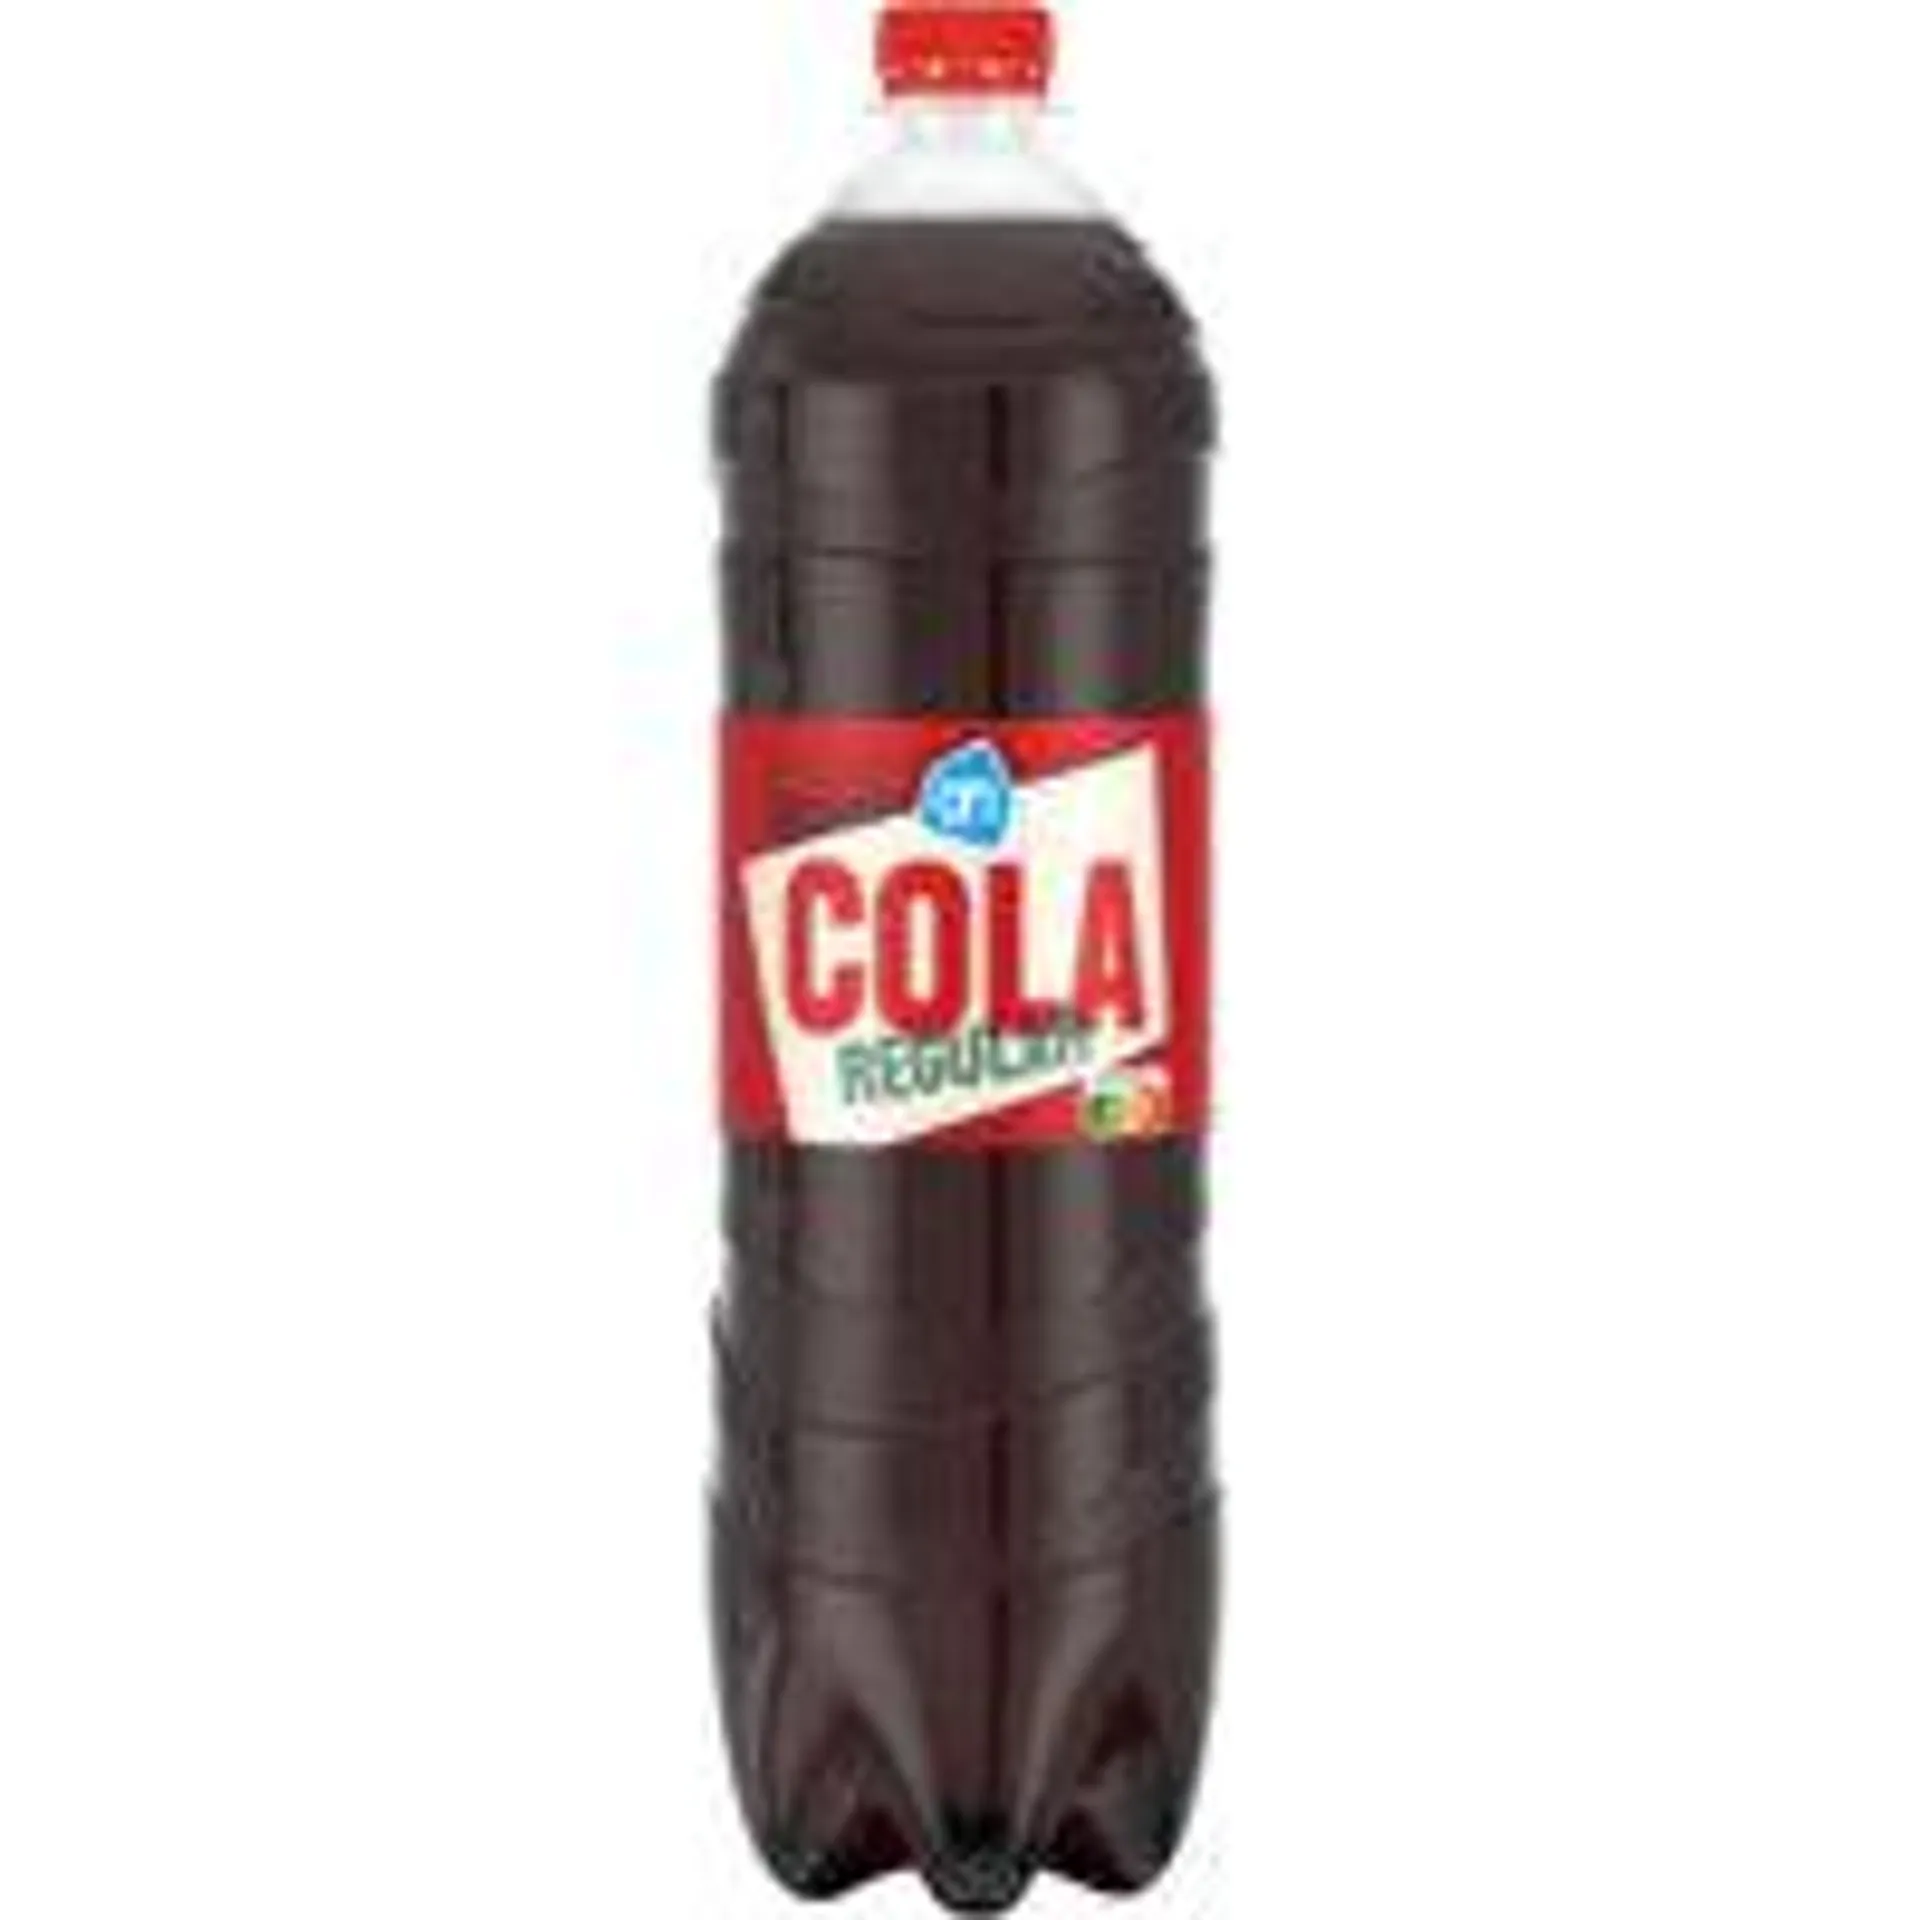 AH Cola regular